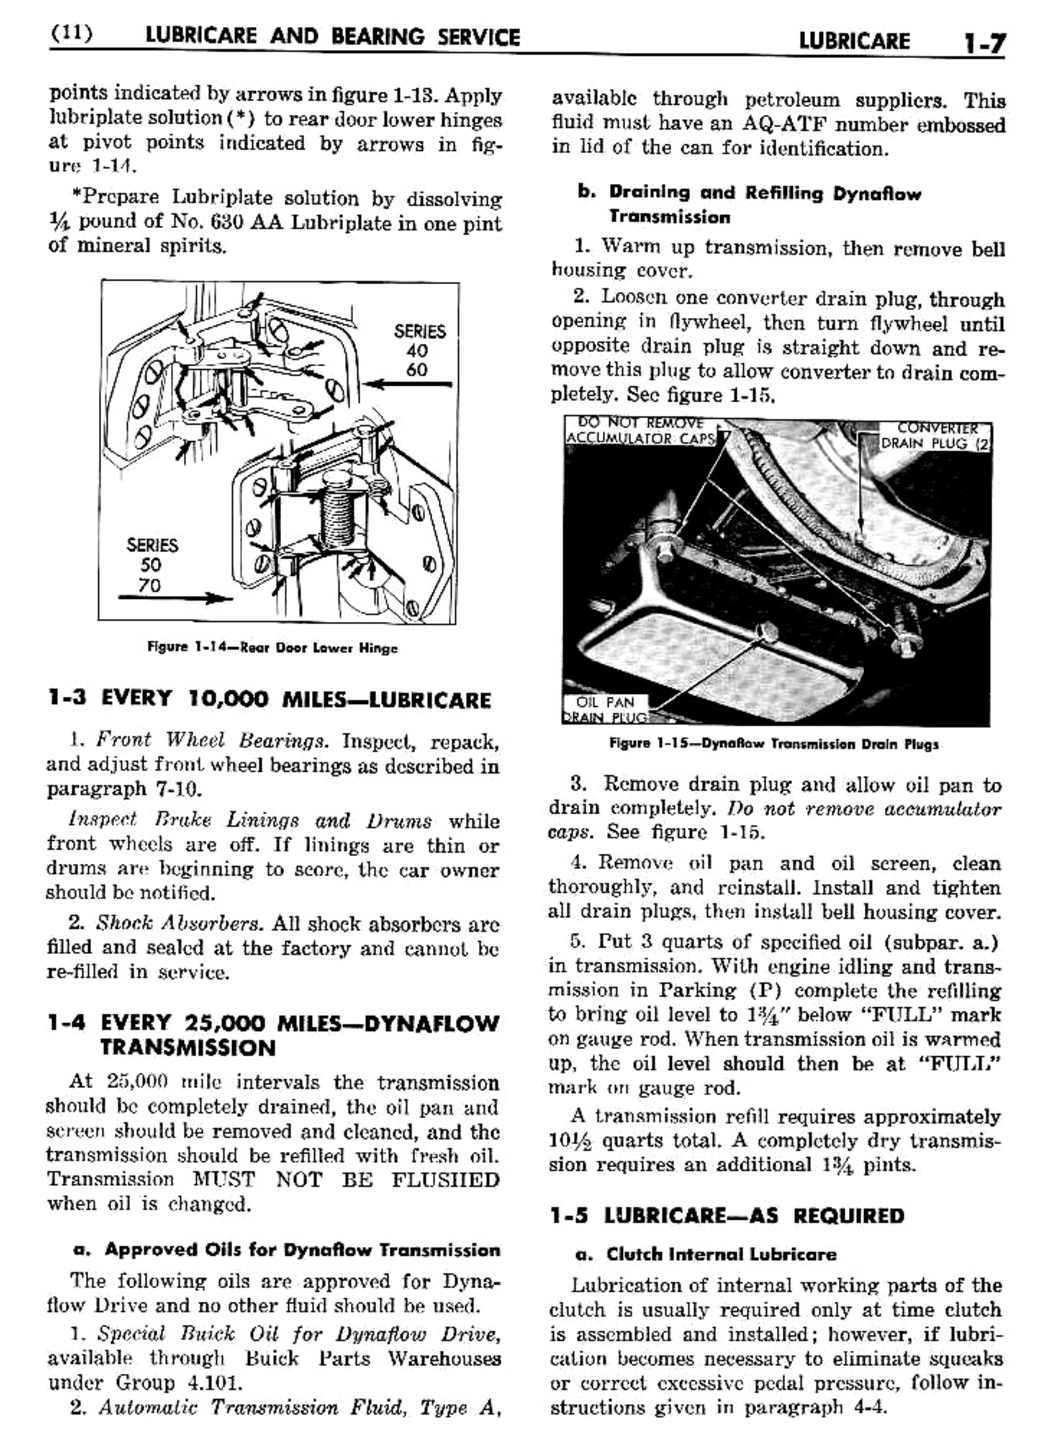 n_02 1956 Buick Shop Manual - Lubricare-007-007.jpg